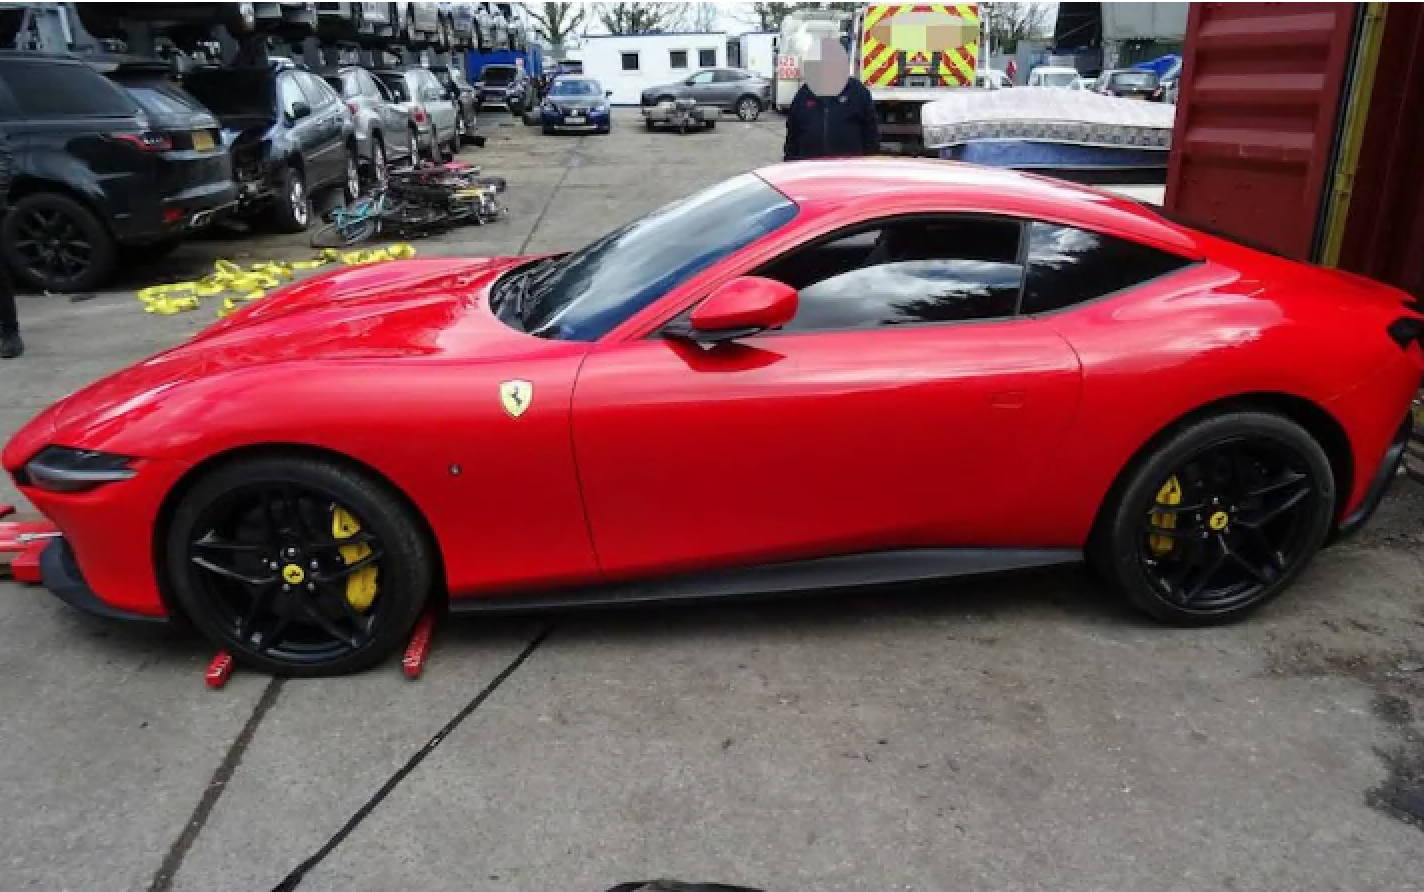 Dieses Bild zeigt einen roten Ferrari, der von der Polizei in Essex gefunden wurde, bevor er ins Ausland verschifft werden konnte